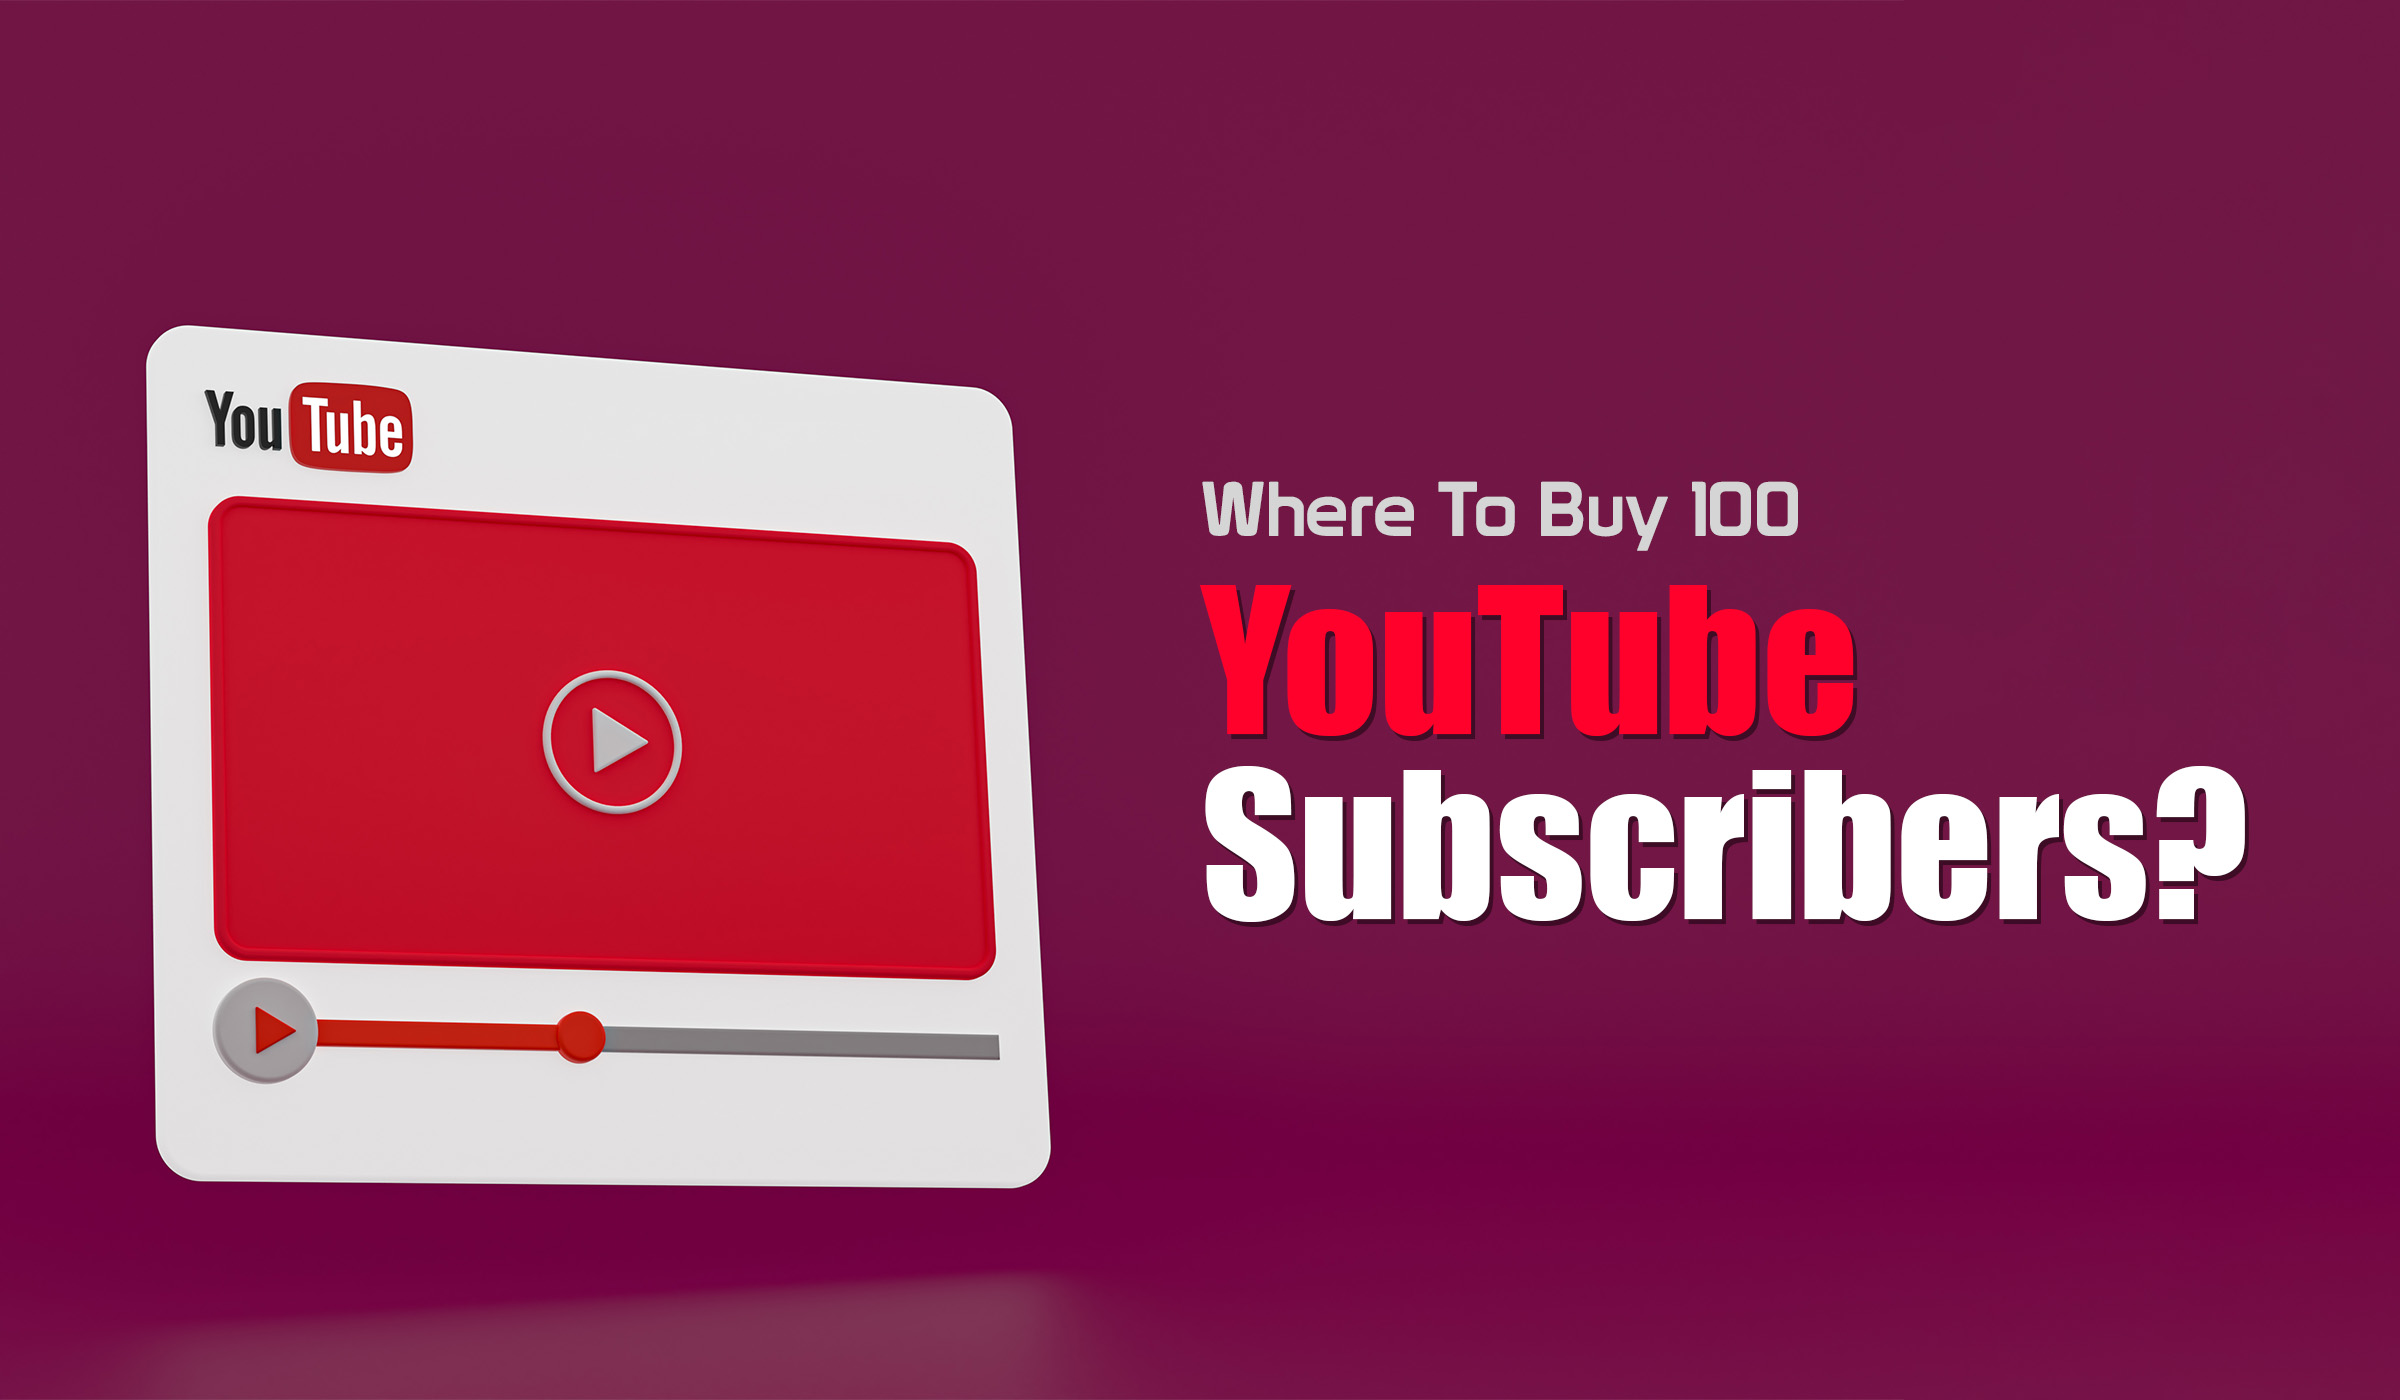 Buy 100 YouTube Subscribers